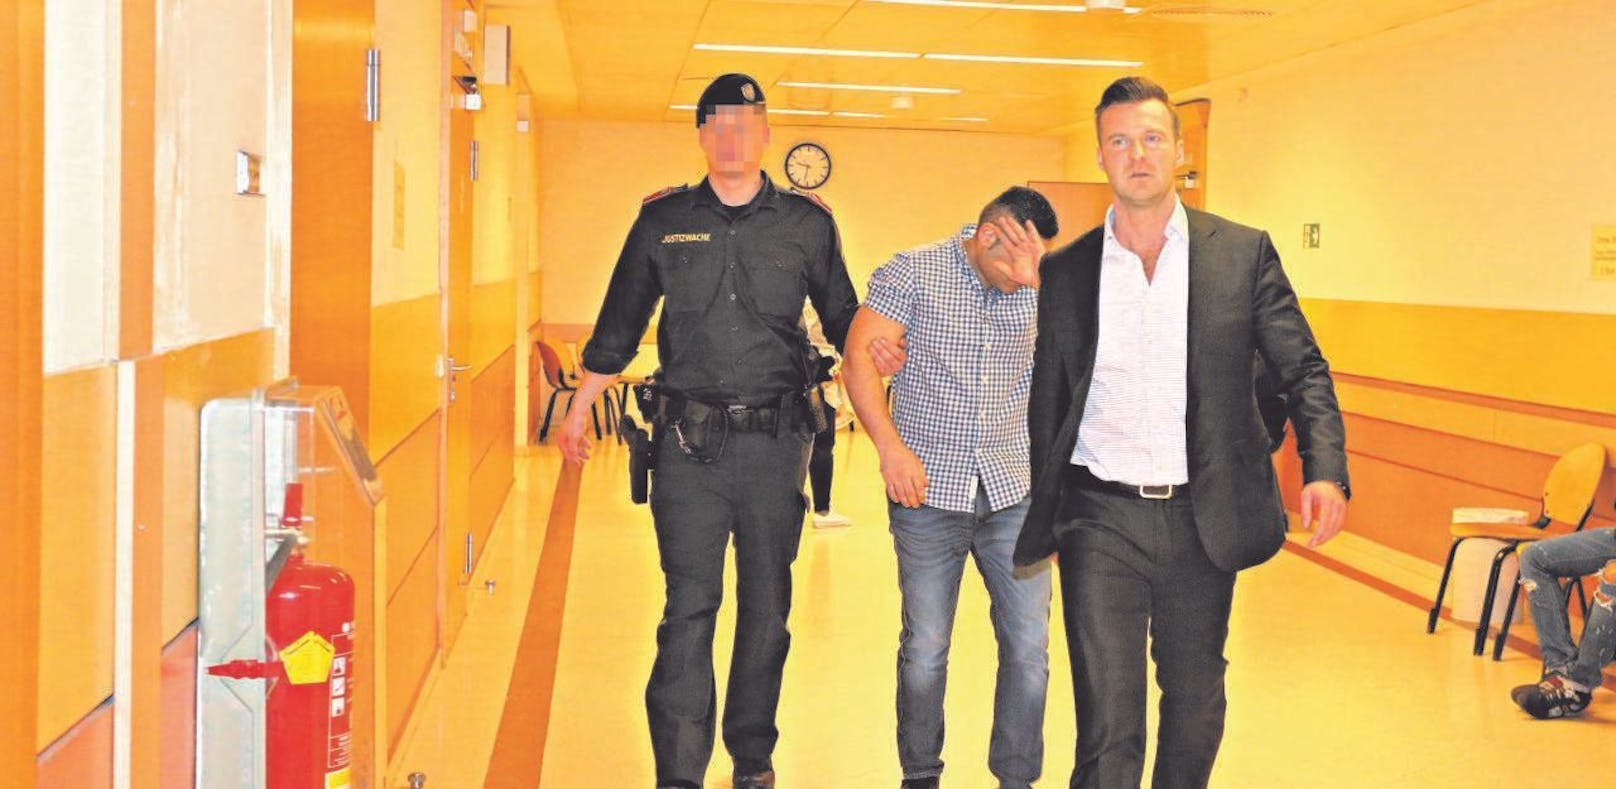 20 Monate Haft nach Bauchstich in Bordell